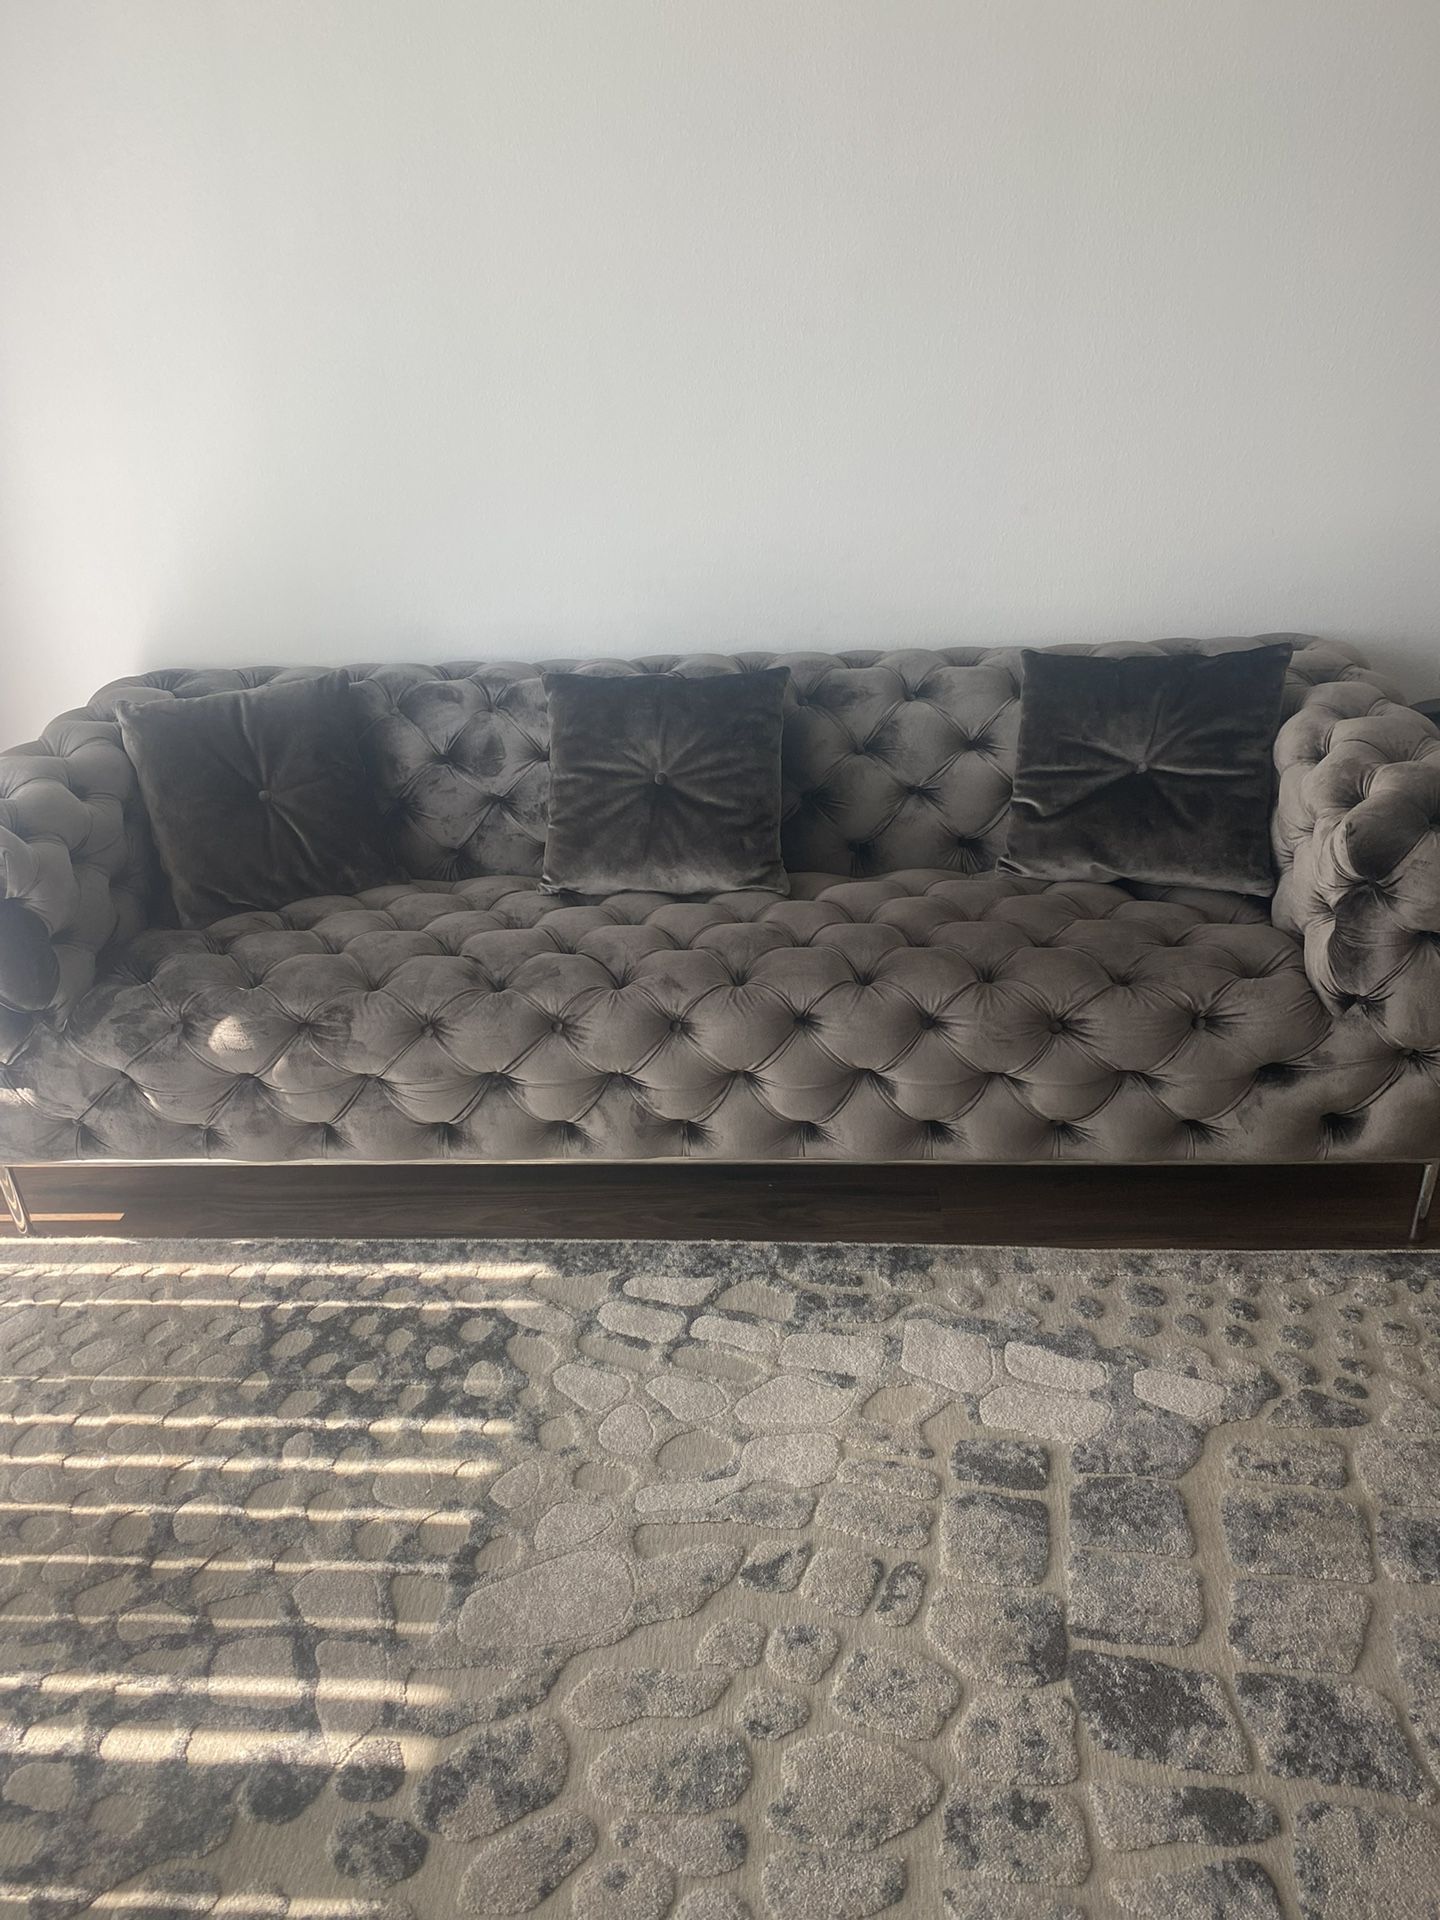 Sofa, Chair, & Area Rug 